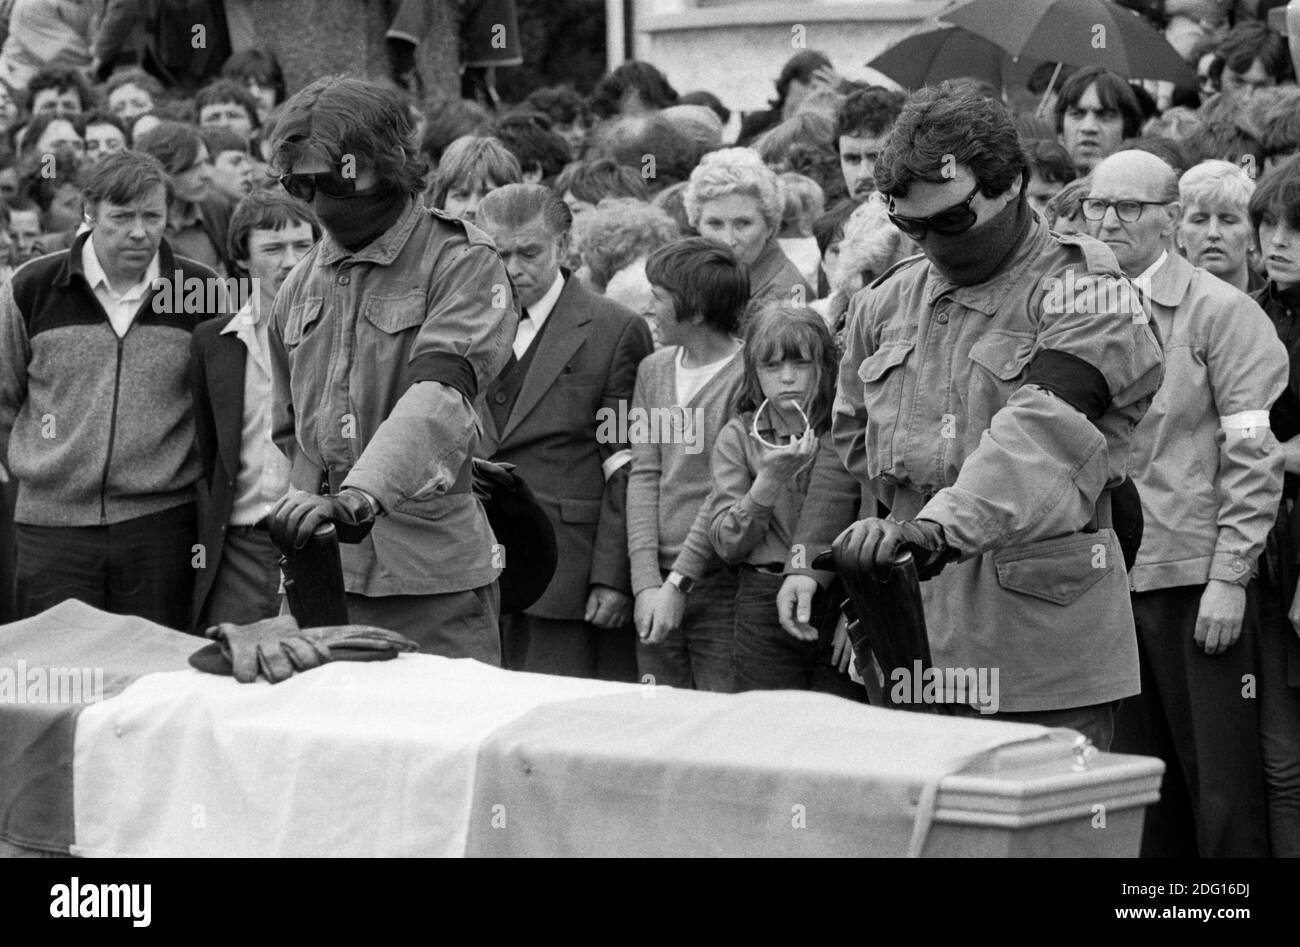 Les funérailles de Joe McDonnell, attaquant de la faim.1980 sont mortes sur le «service actif», une garde d'honneur, des hommes paramilitaires armés disent une prière avant de tirer sur le cercueil. Juillet 1981. Années 80 Belfast Irlande du Nord HOMER SYKES Banque D'Images